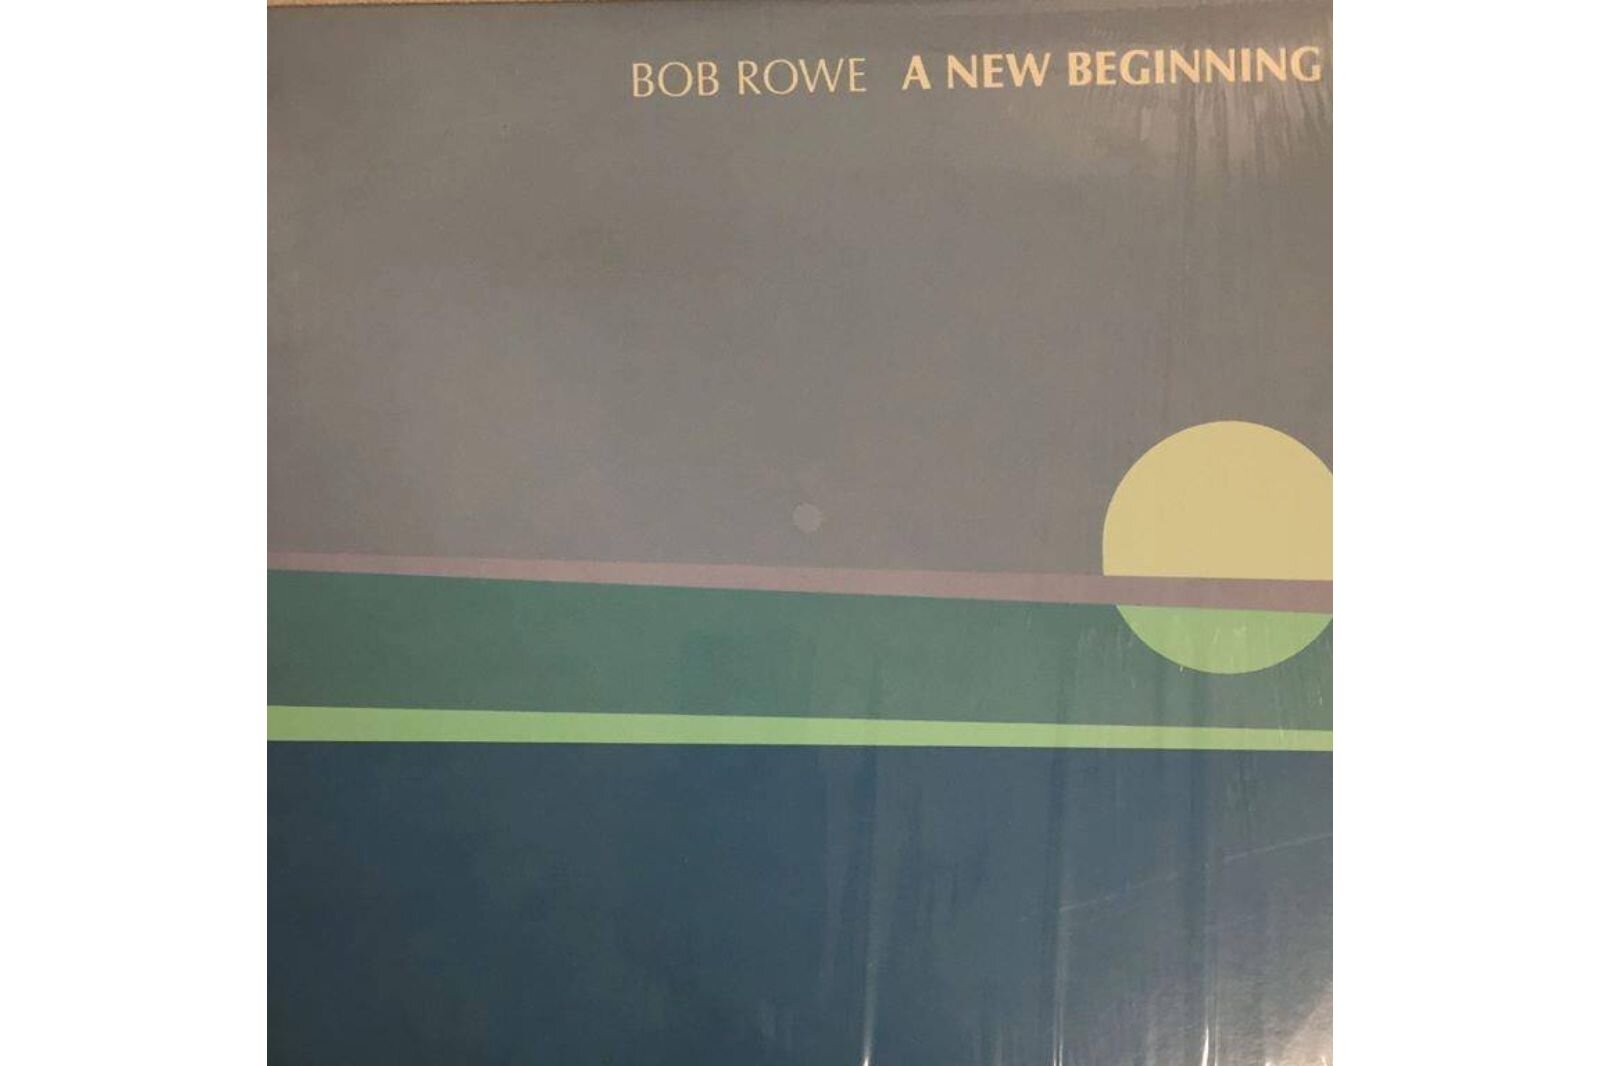 Bob Rowe's first album, "A New Beginning."